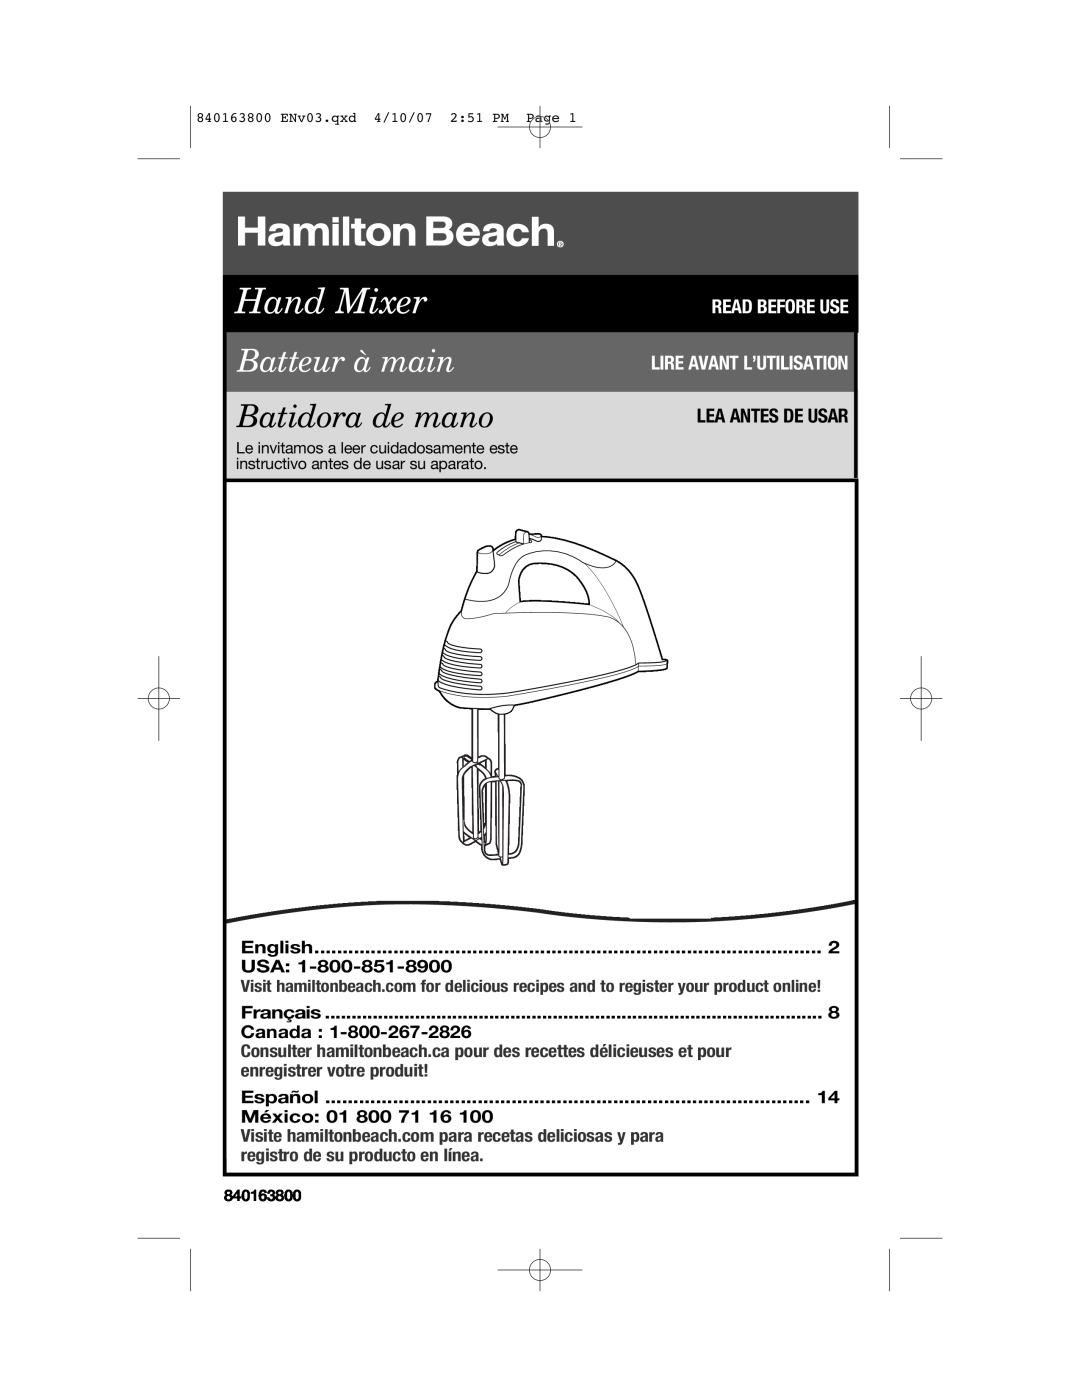 Hamilton Beach 62650, 840163800 manual Lea Antes De Usar, English, Français, Canada, Español, México 01 800 71, Hand Mixer 